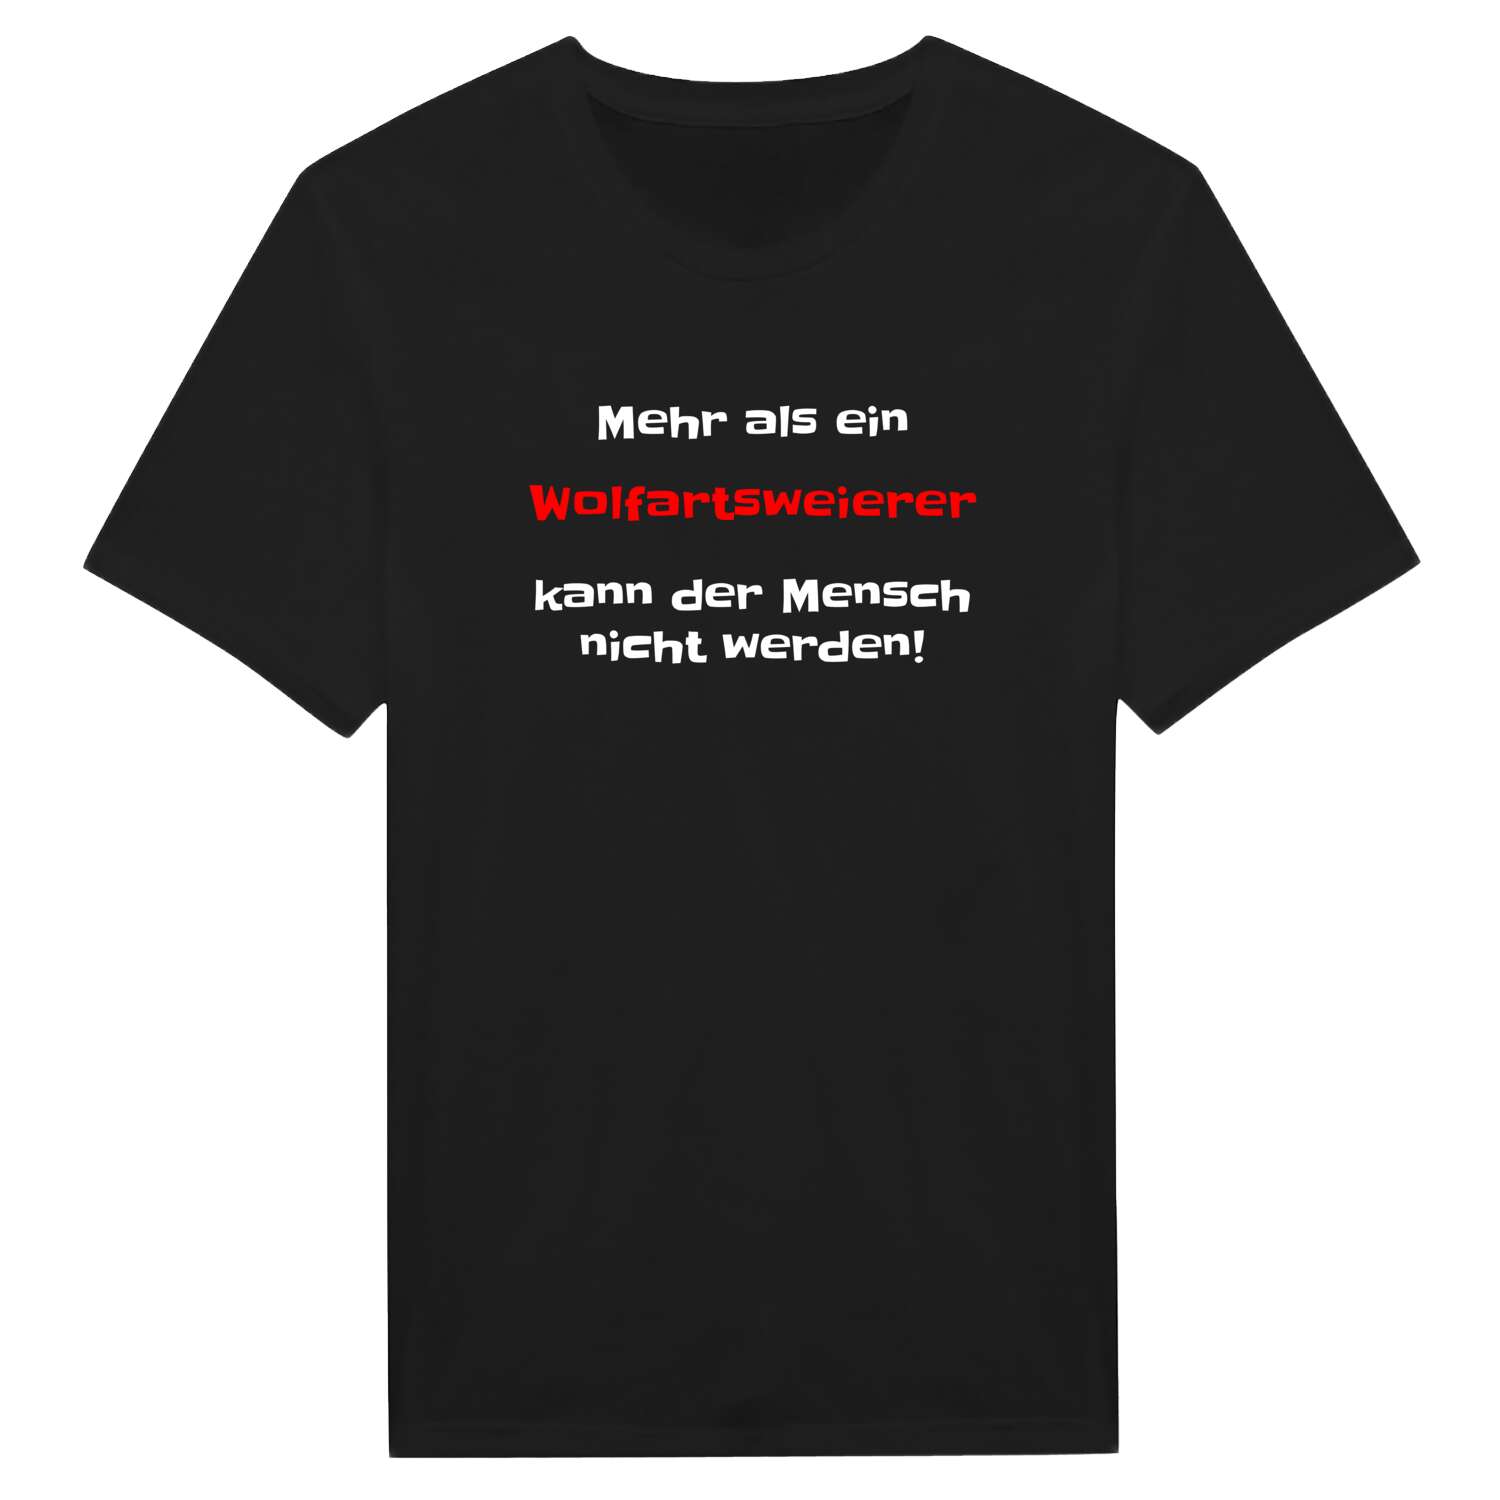 Wolfartsweier T-Shirt »Mehr als ein«